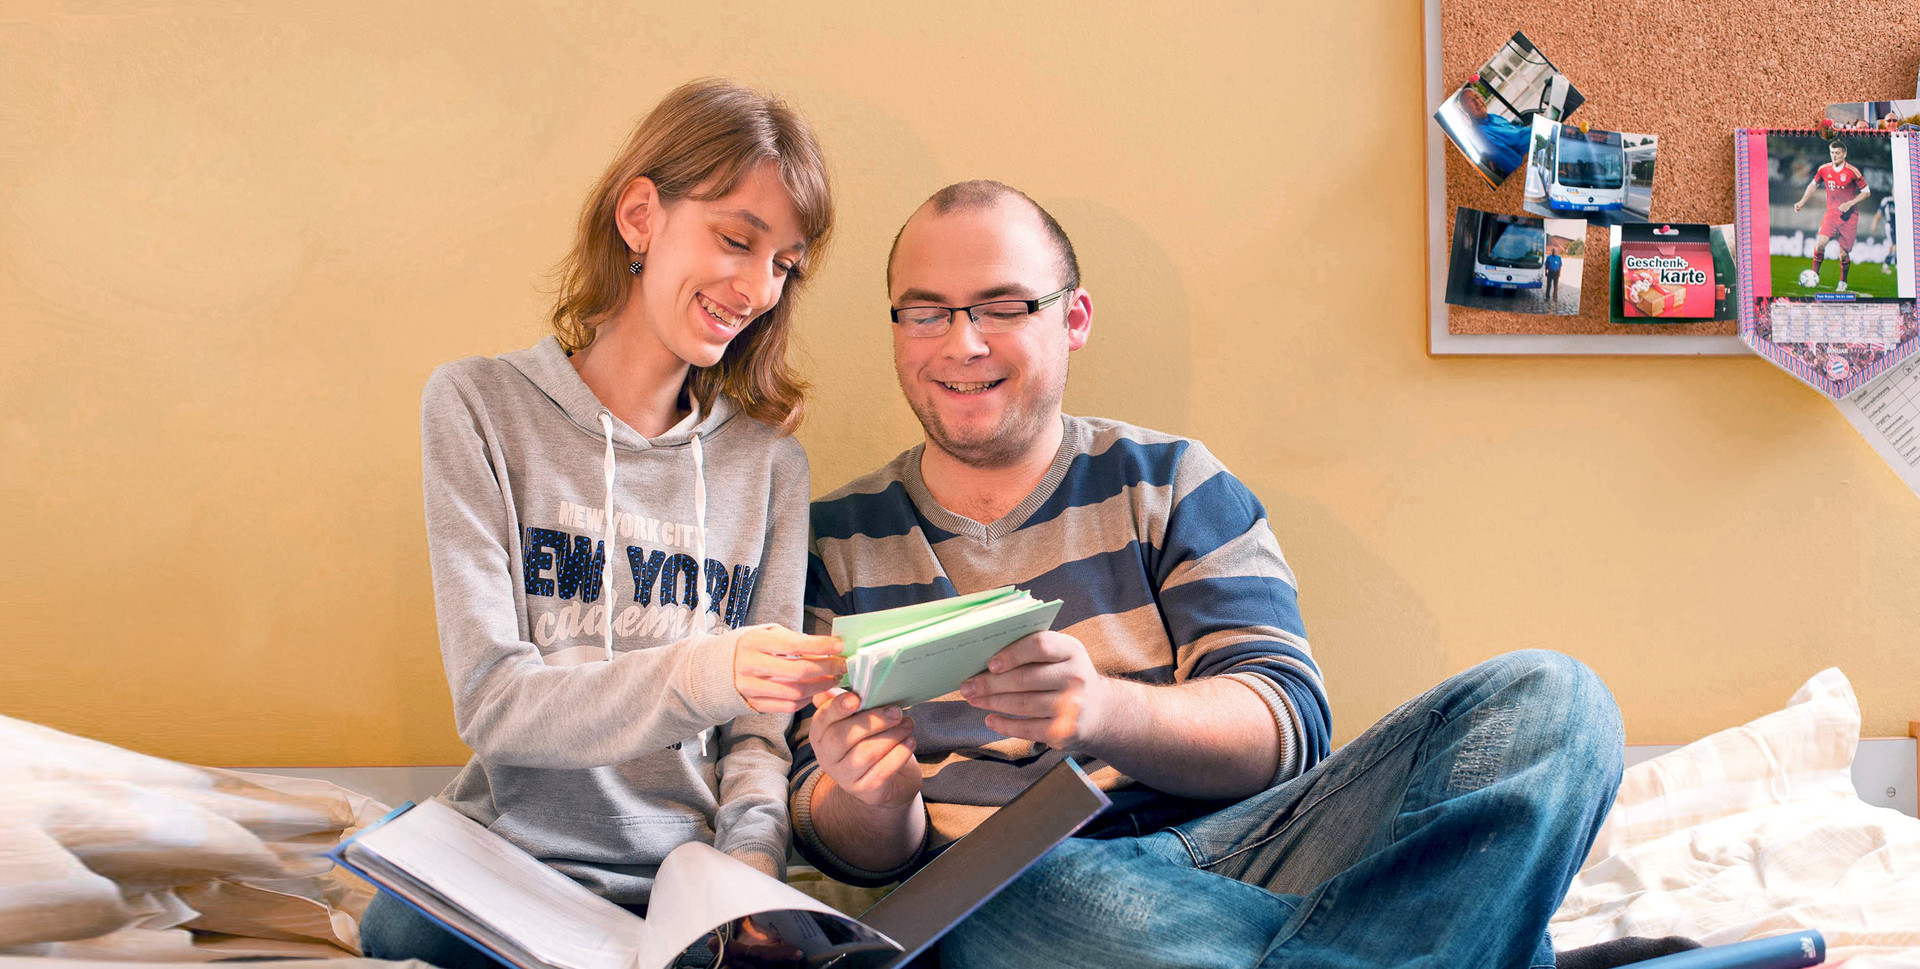 Berufsausbildung in Dresden mit der Möglichkeit auf dem SRH eigenen Campus zu wohnen